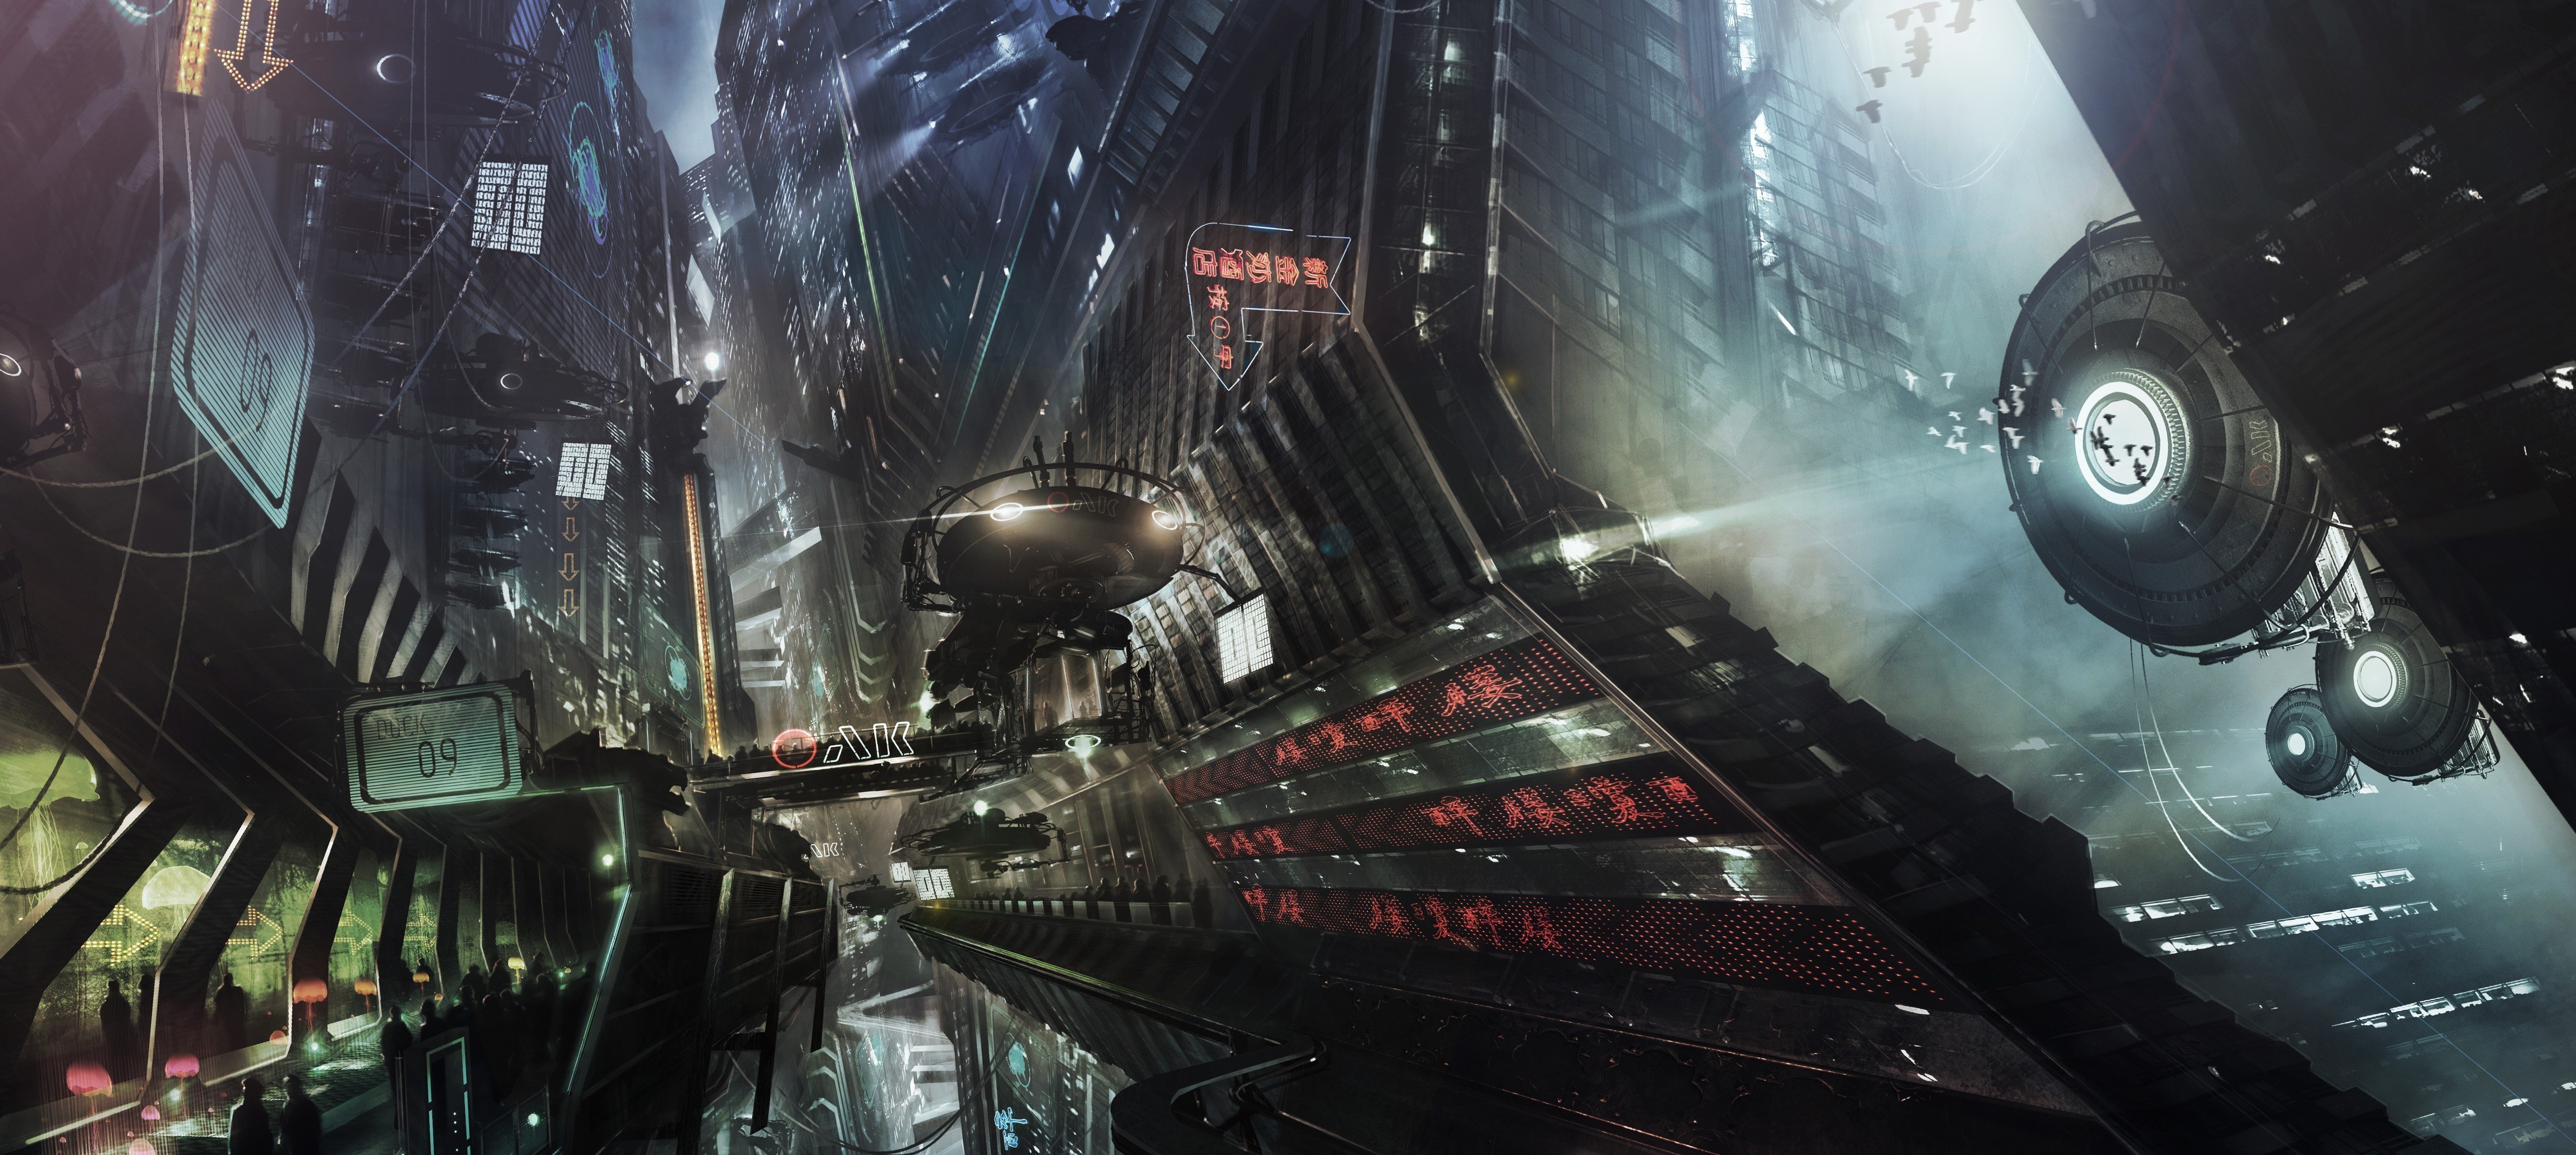 General 4508x2021 artwork science fiction futuristic futuristic city digital art cityscape